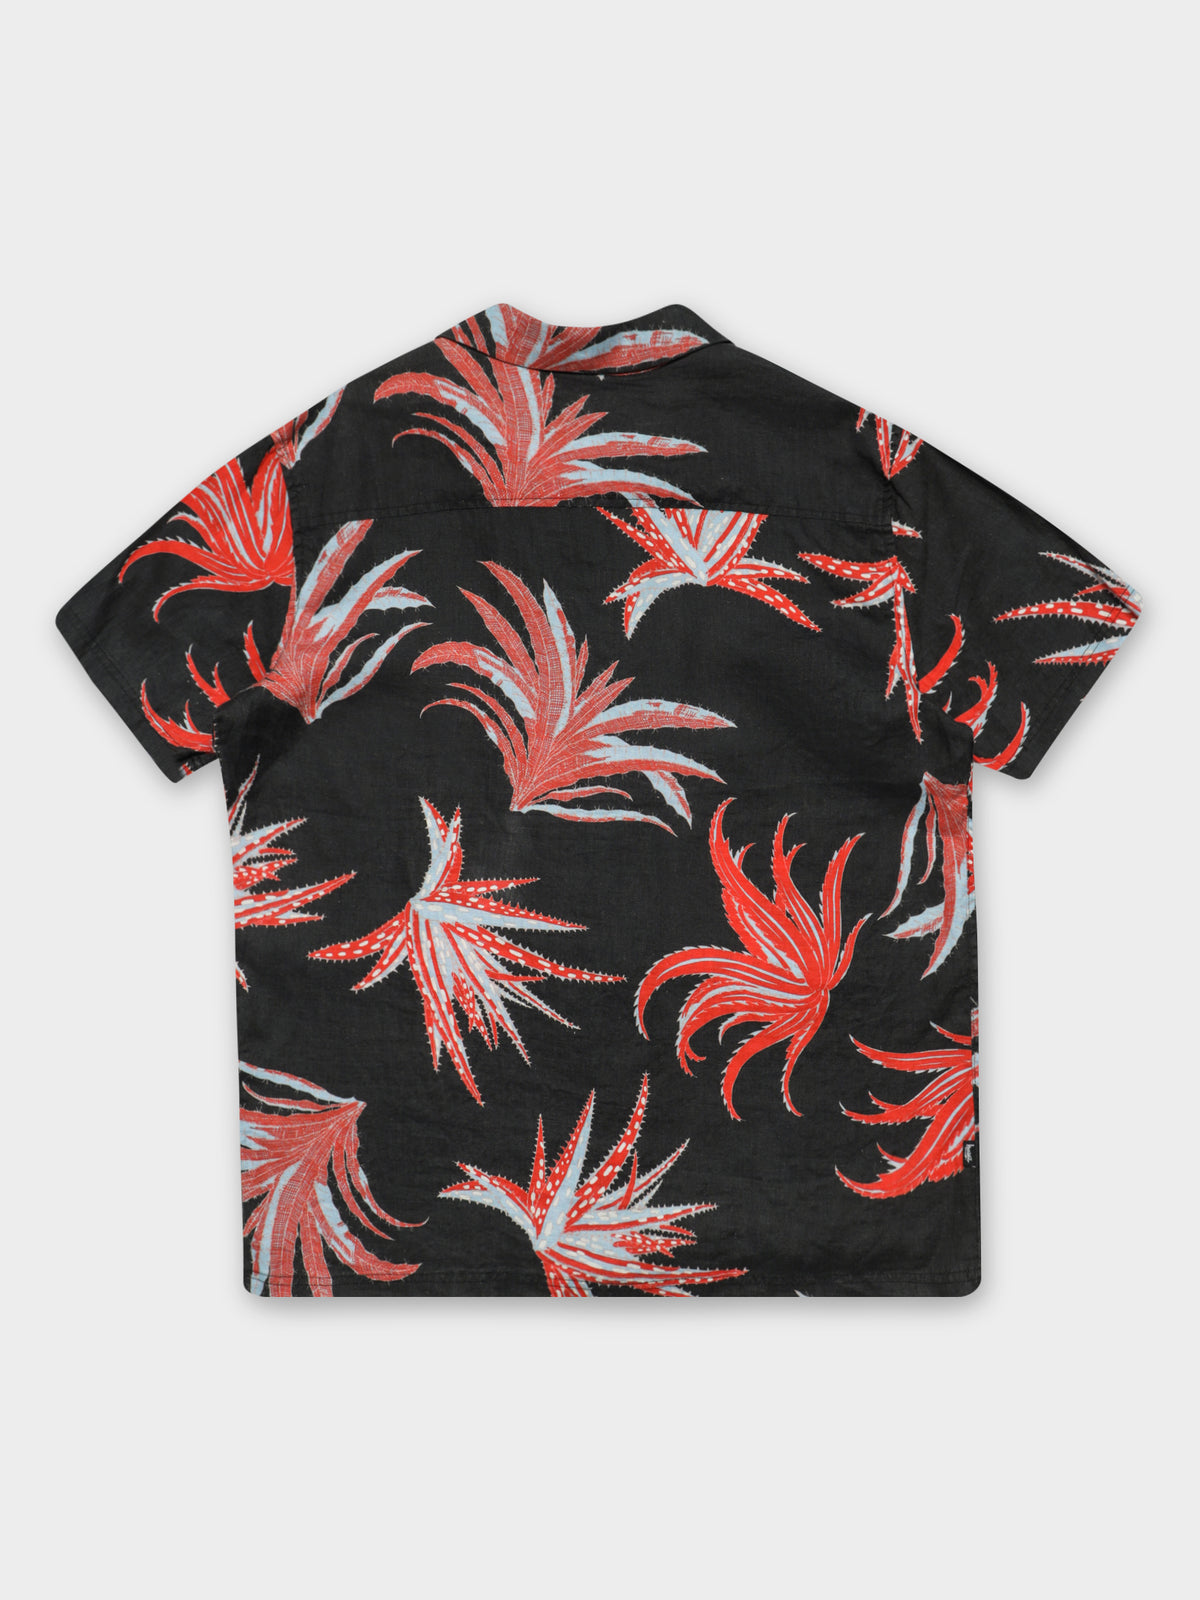 Cactus Print Shirt in Black